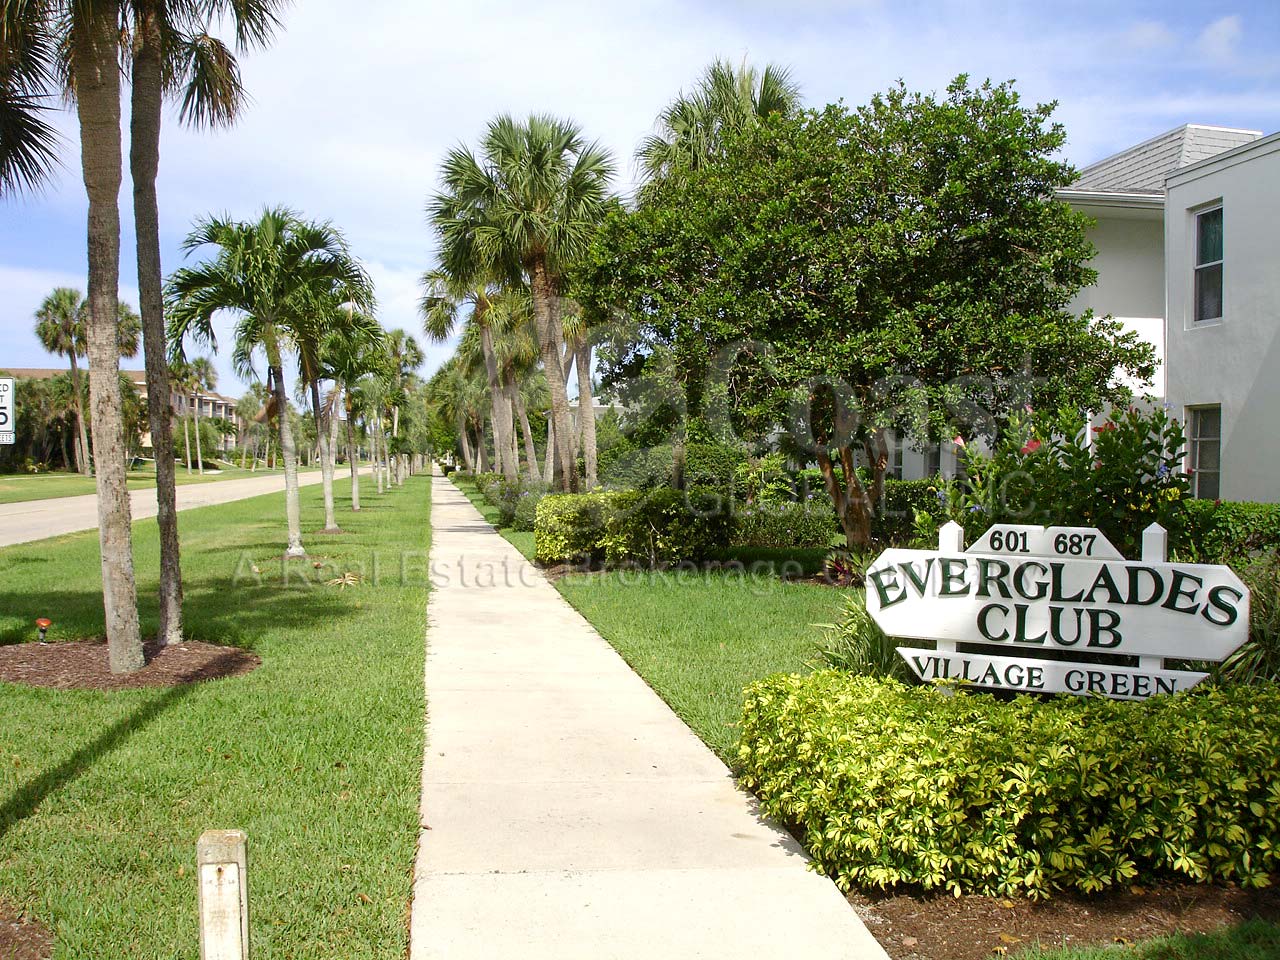 Everglades Club Signage